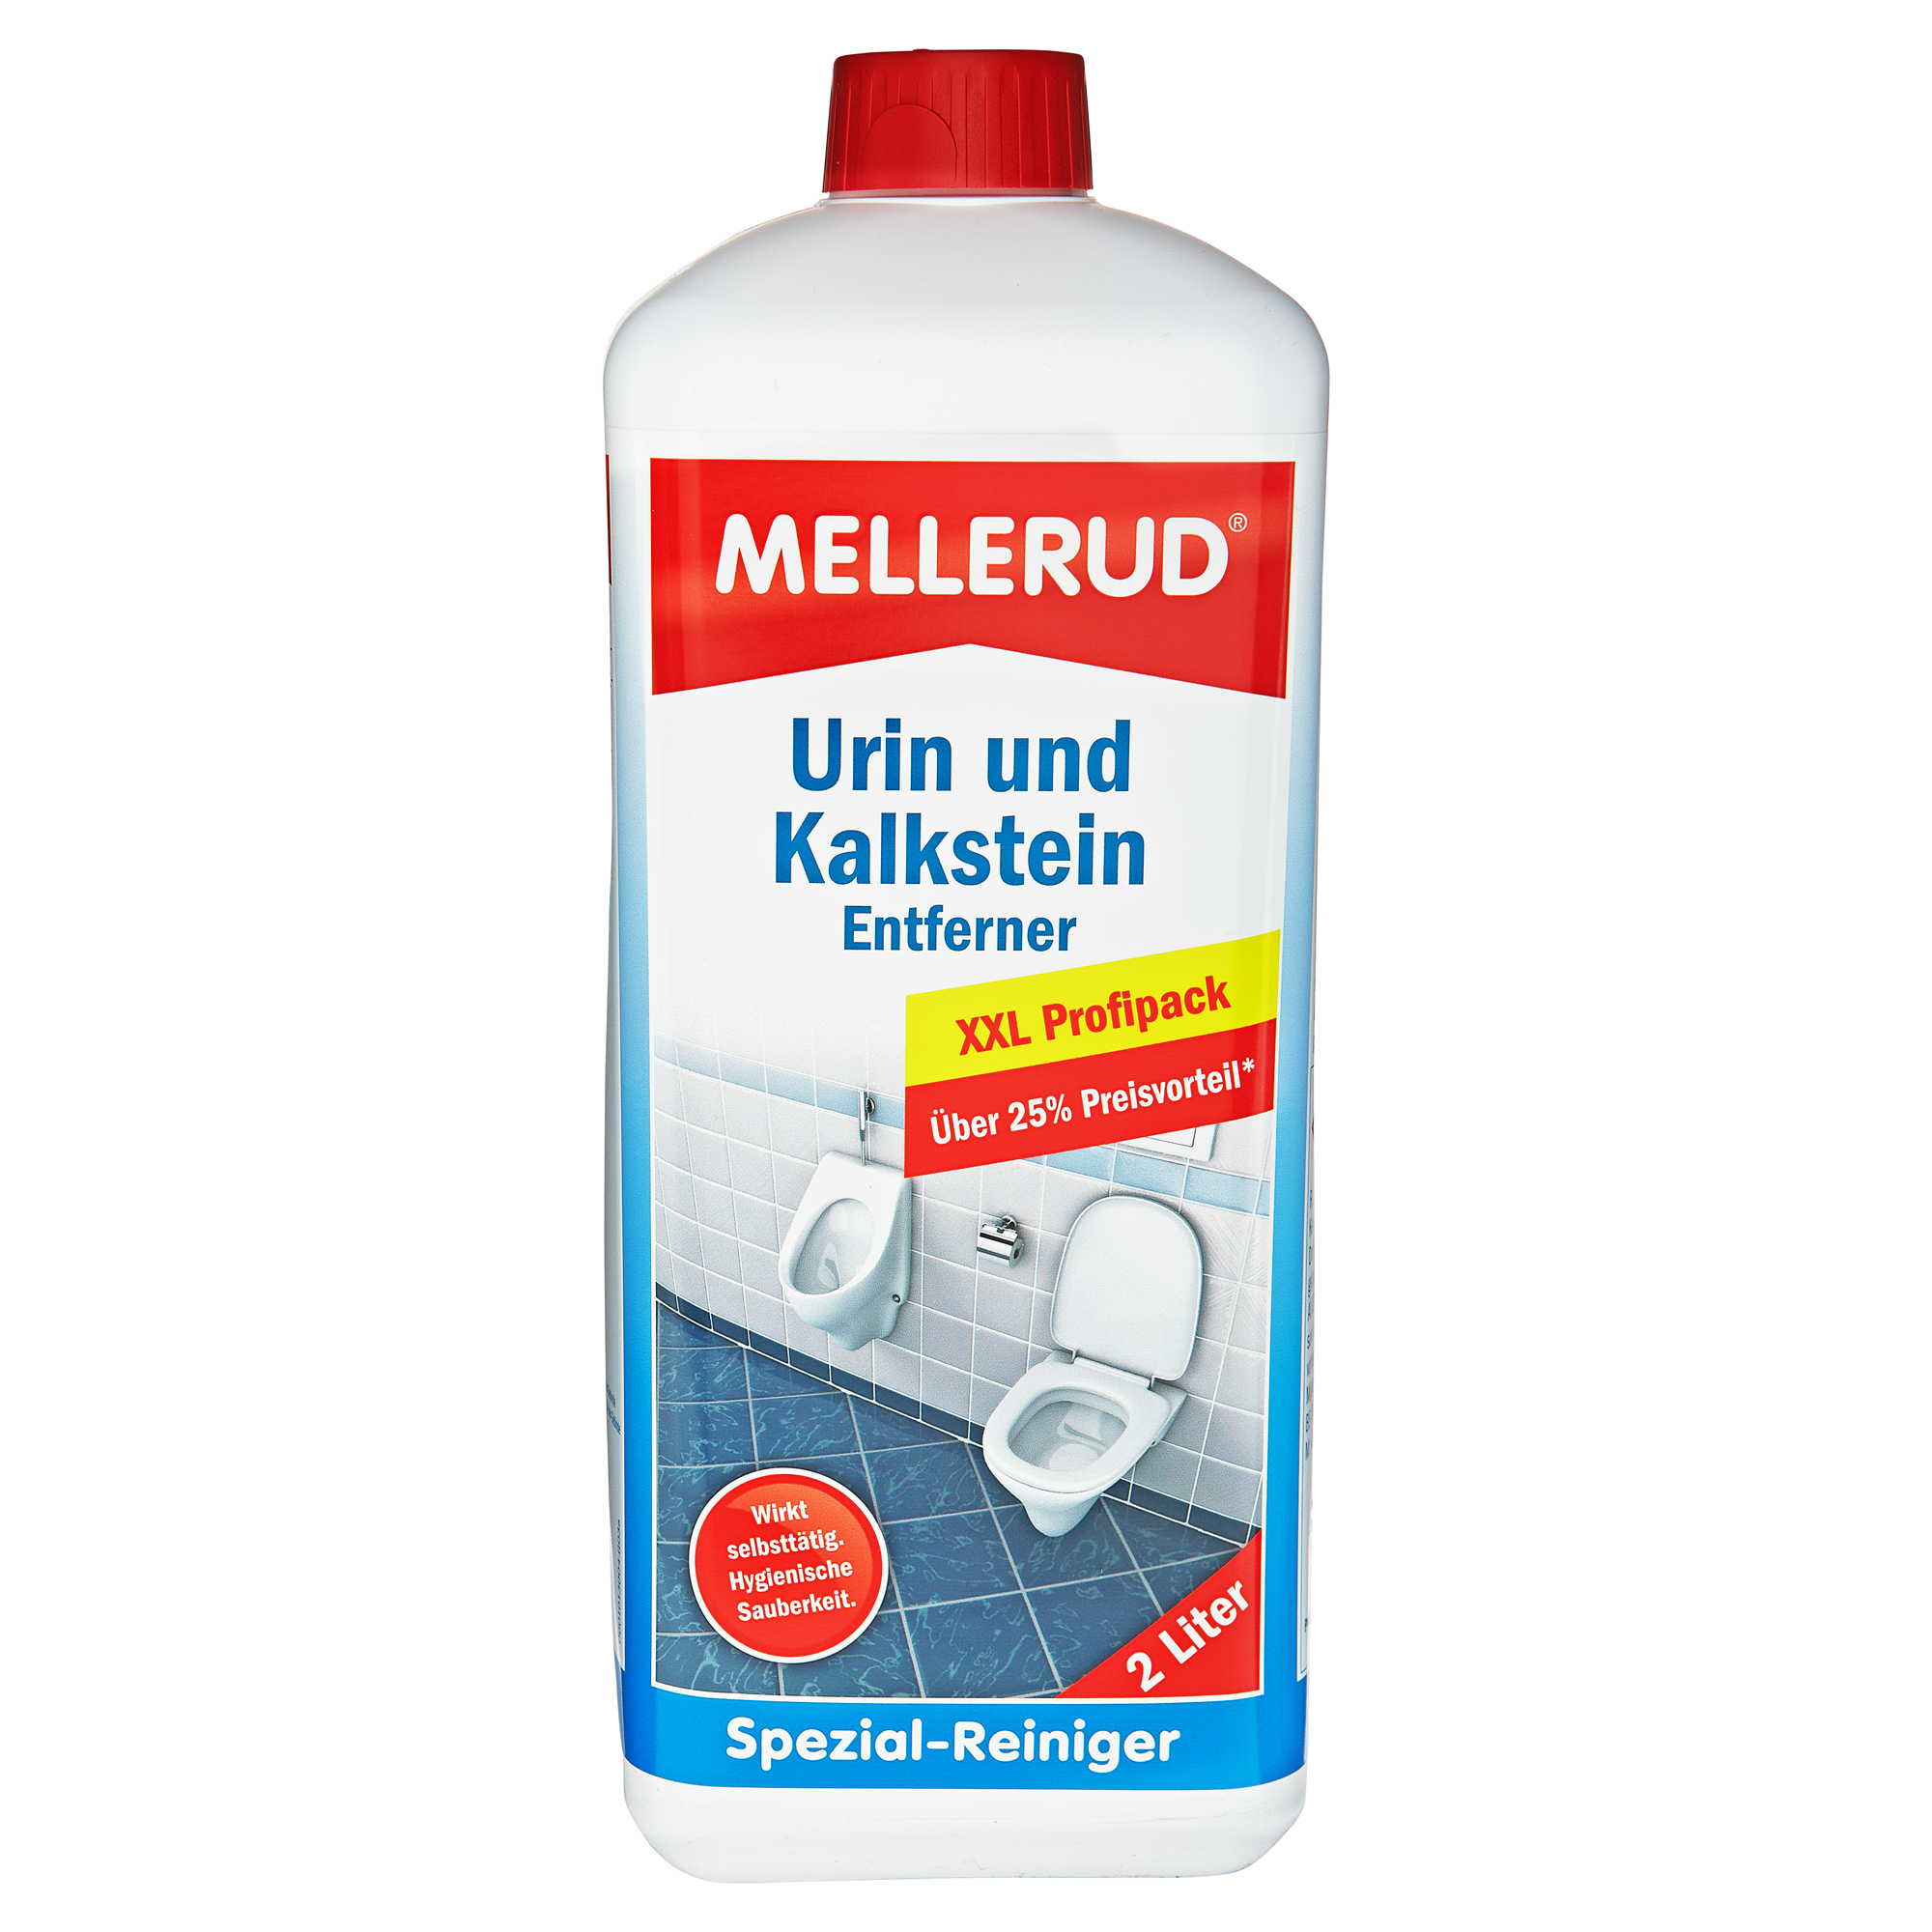 Urin- und Kalksteinentferner "Spezialreiniger" 2000 ml + product picture